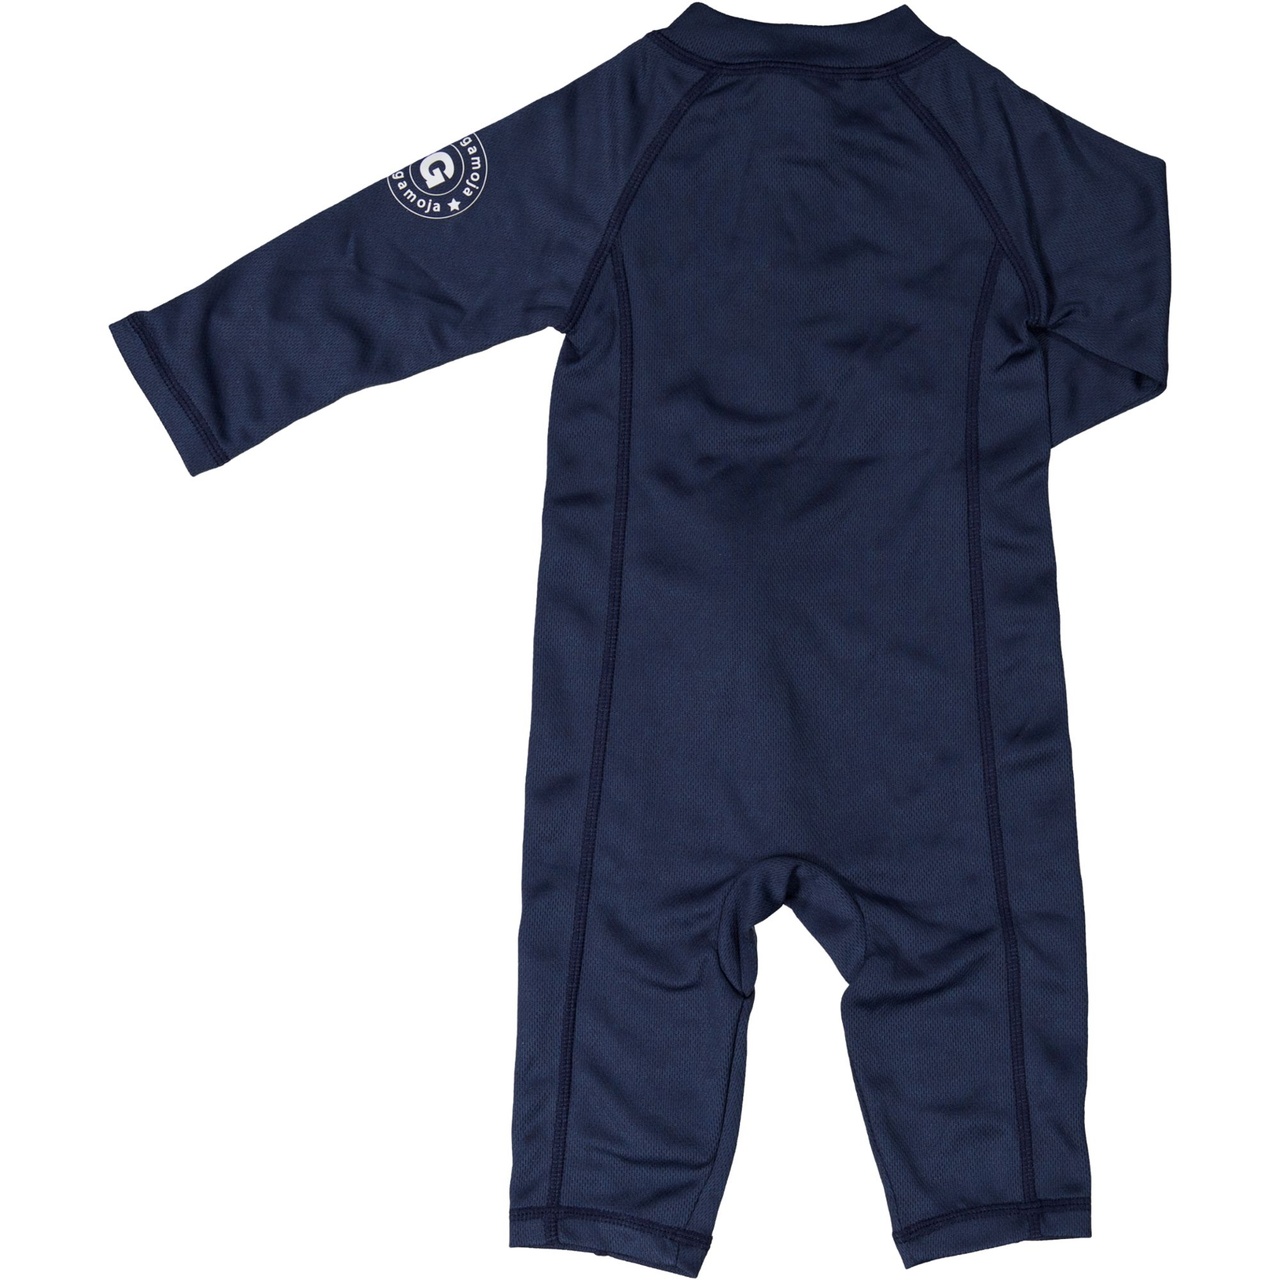 UV Baby suit Navy  50/56